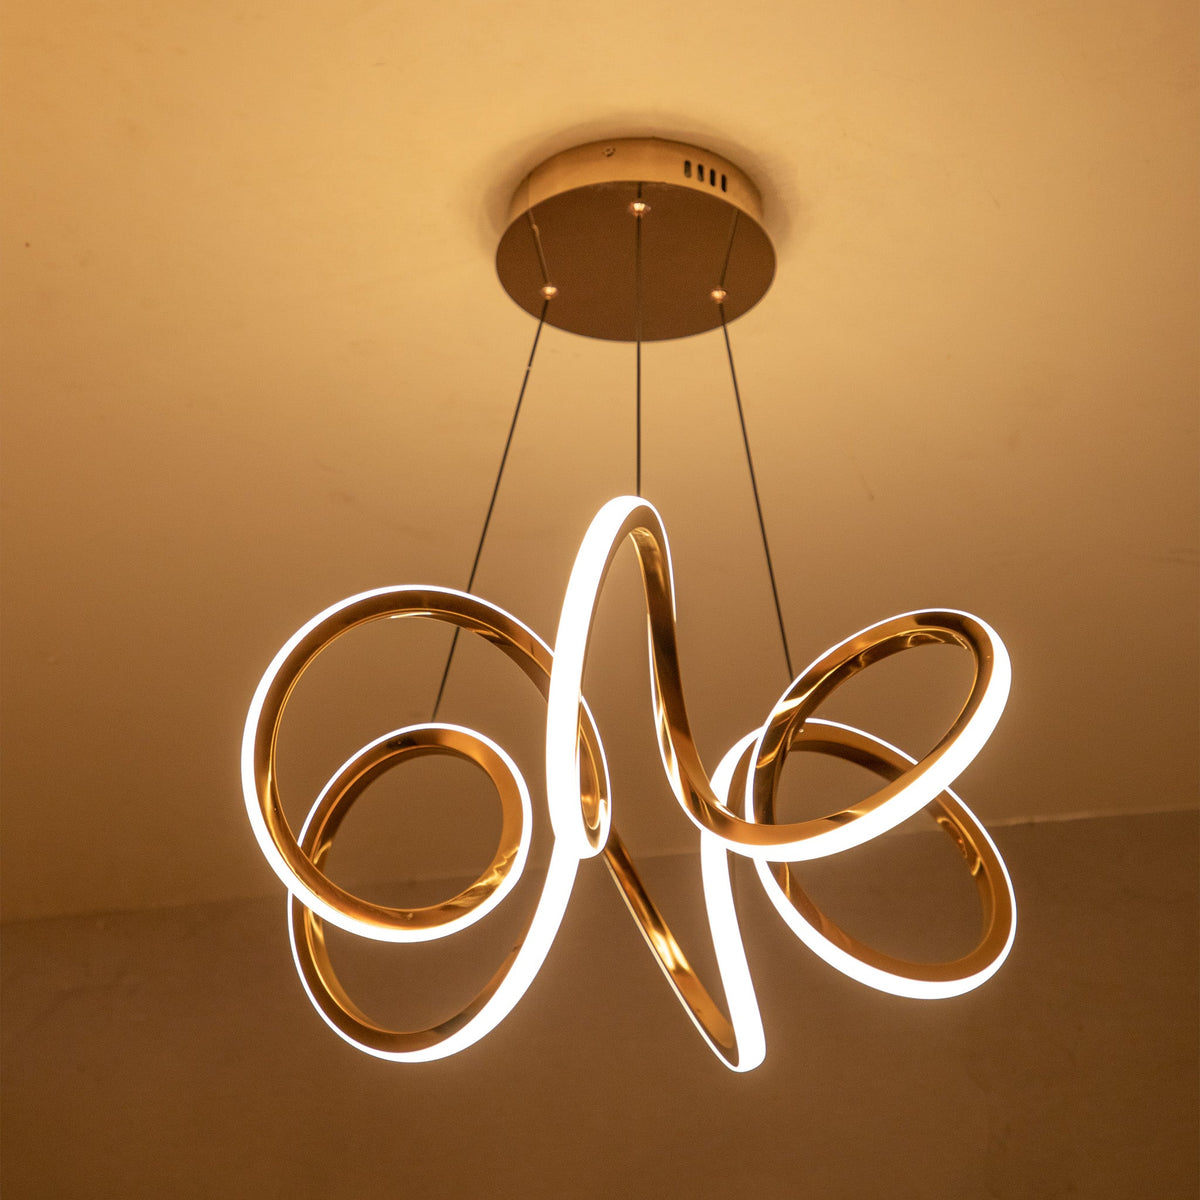 Buy In a Loop LED Chandelier online